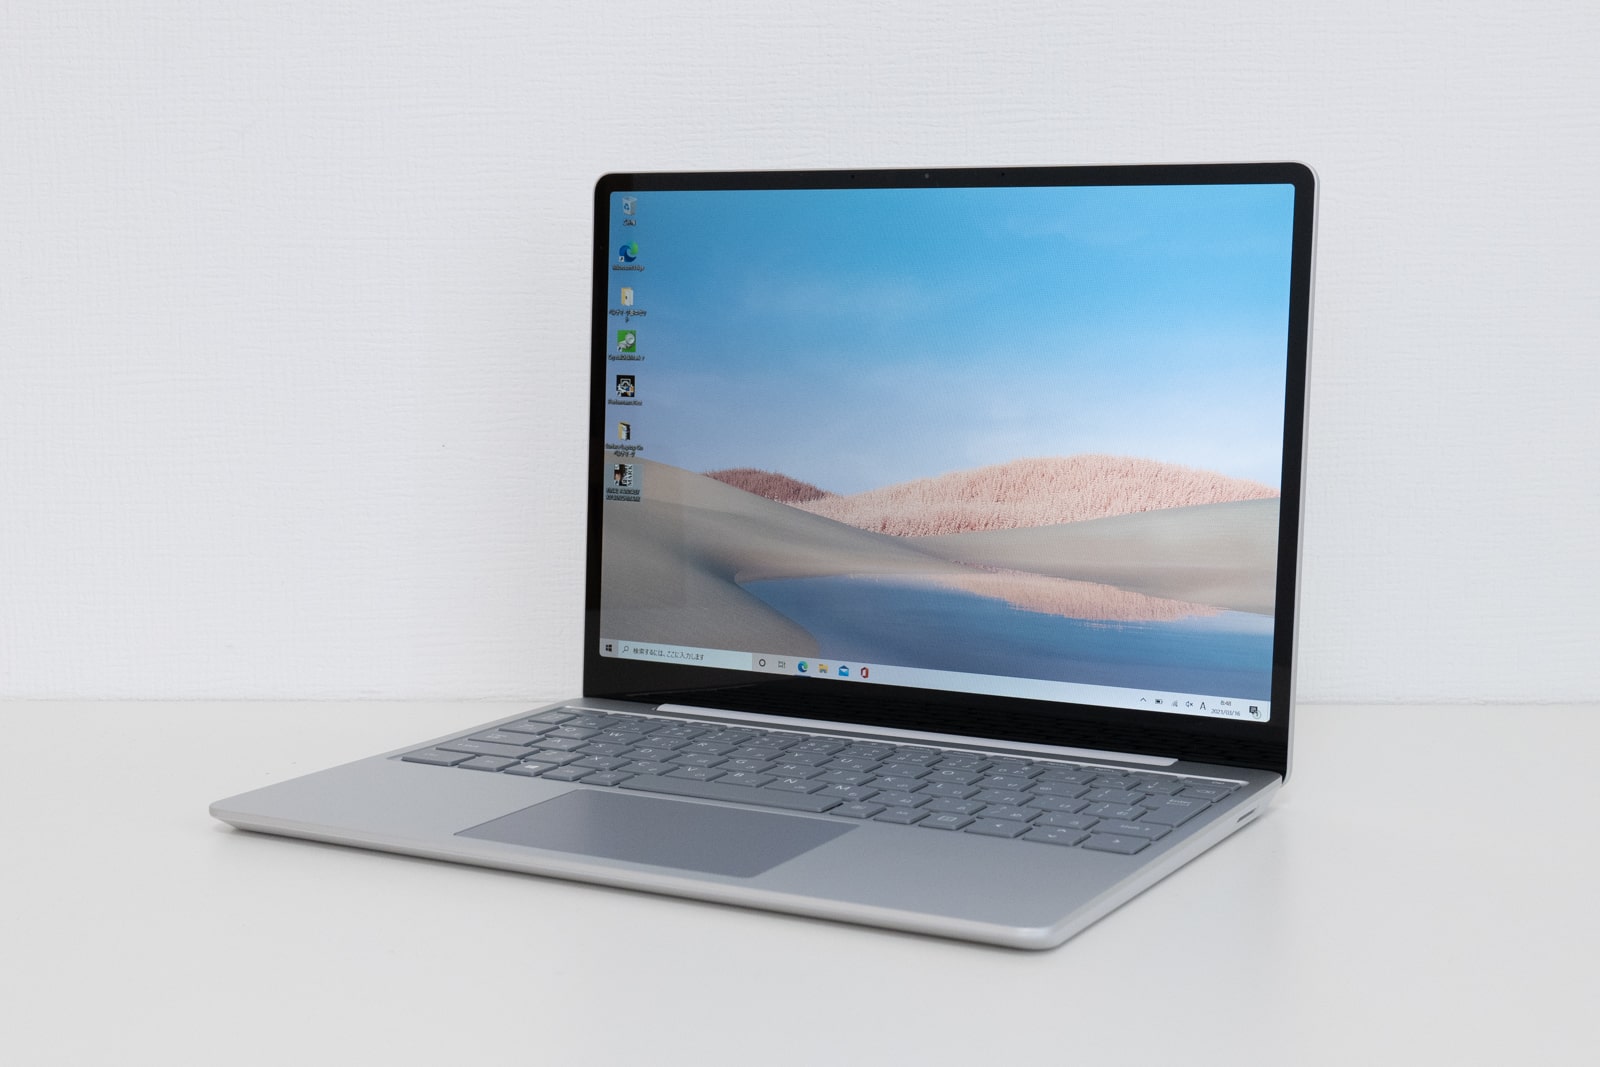 【実機レビュー】Surface Laptop Goのスペック、メリット・デメリット評価と口コミ